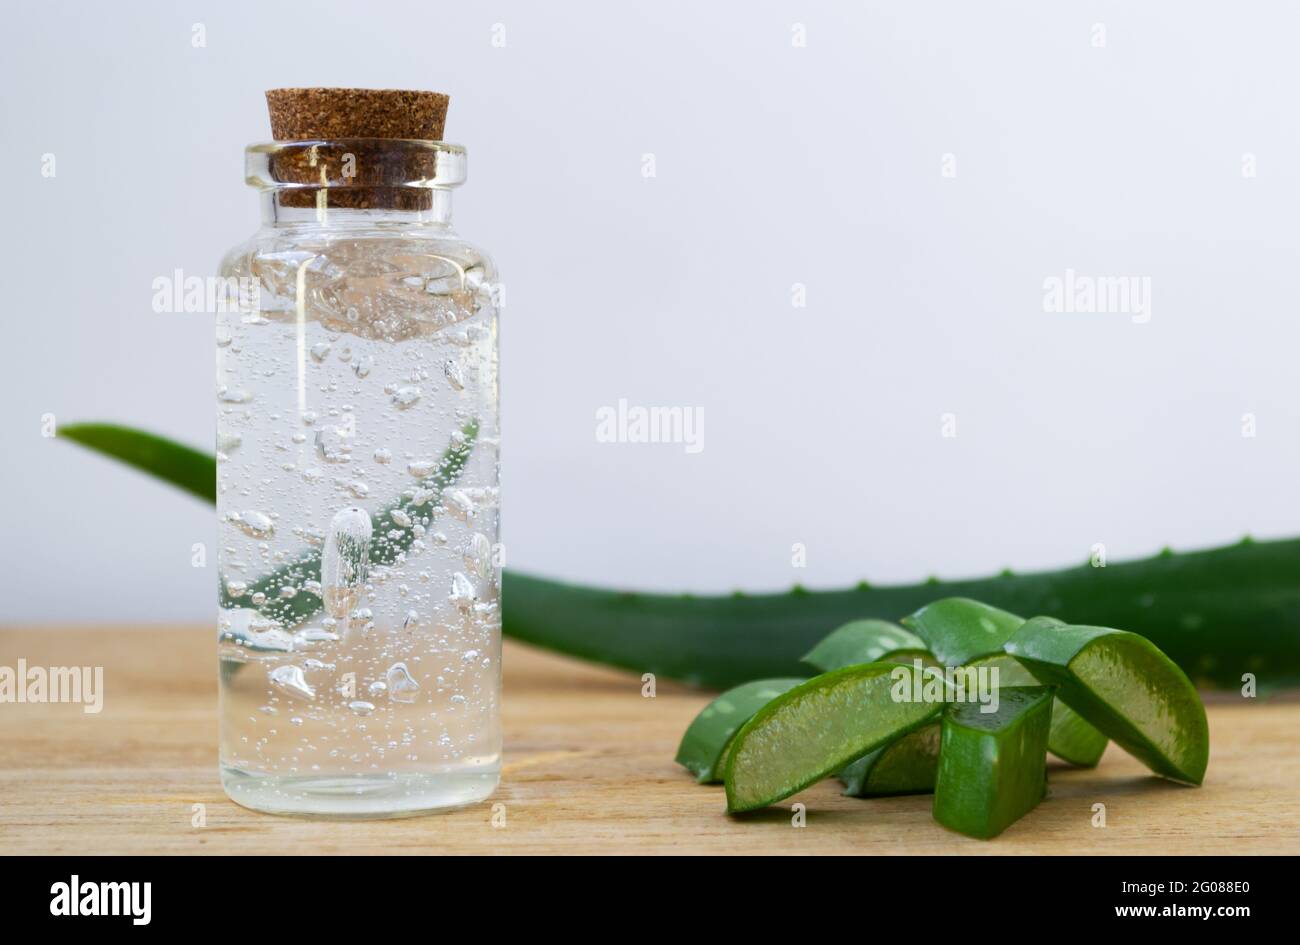 Glasflasche mit Aloe Vera Gel mit ganzen Blättern und Pflanzenstücken auf  Holzgrund Stockfotografie - Alamy